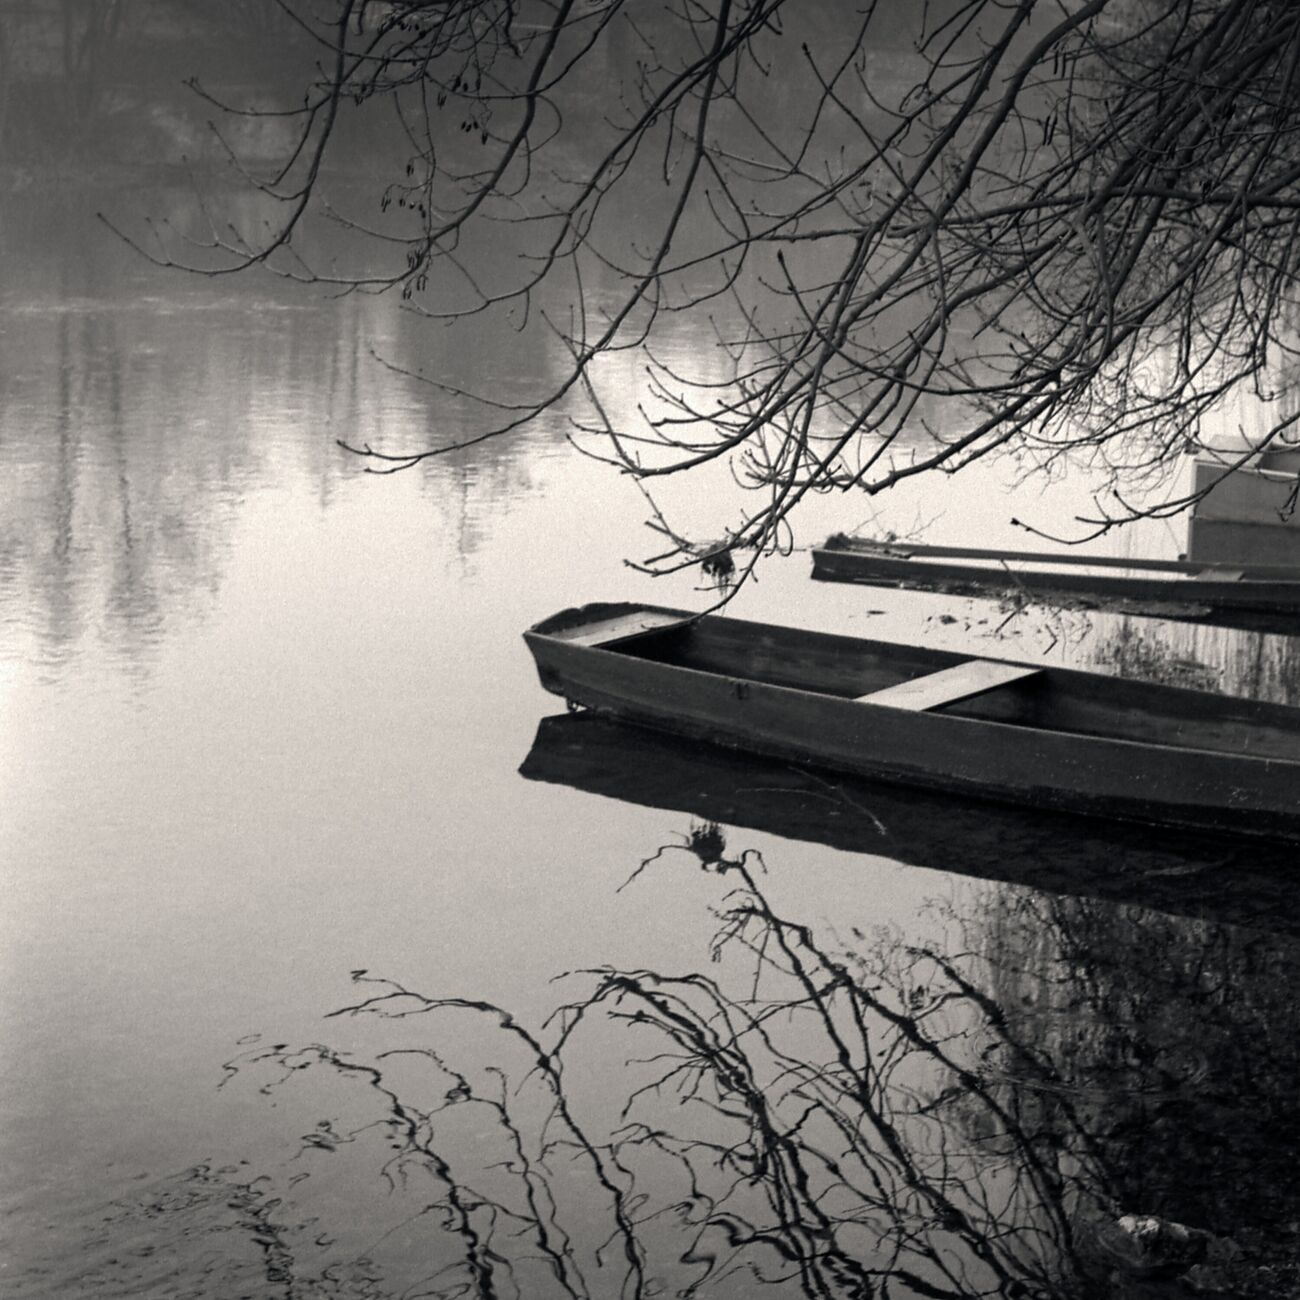 Clain River, Poitiers, France. Décembre 1989. Ref-913 - Denis Olivier Photographie